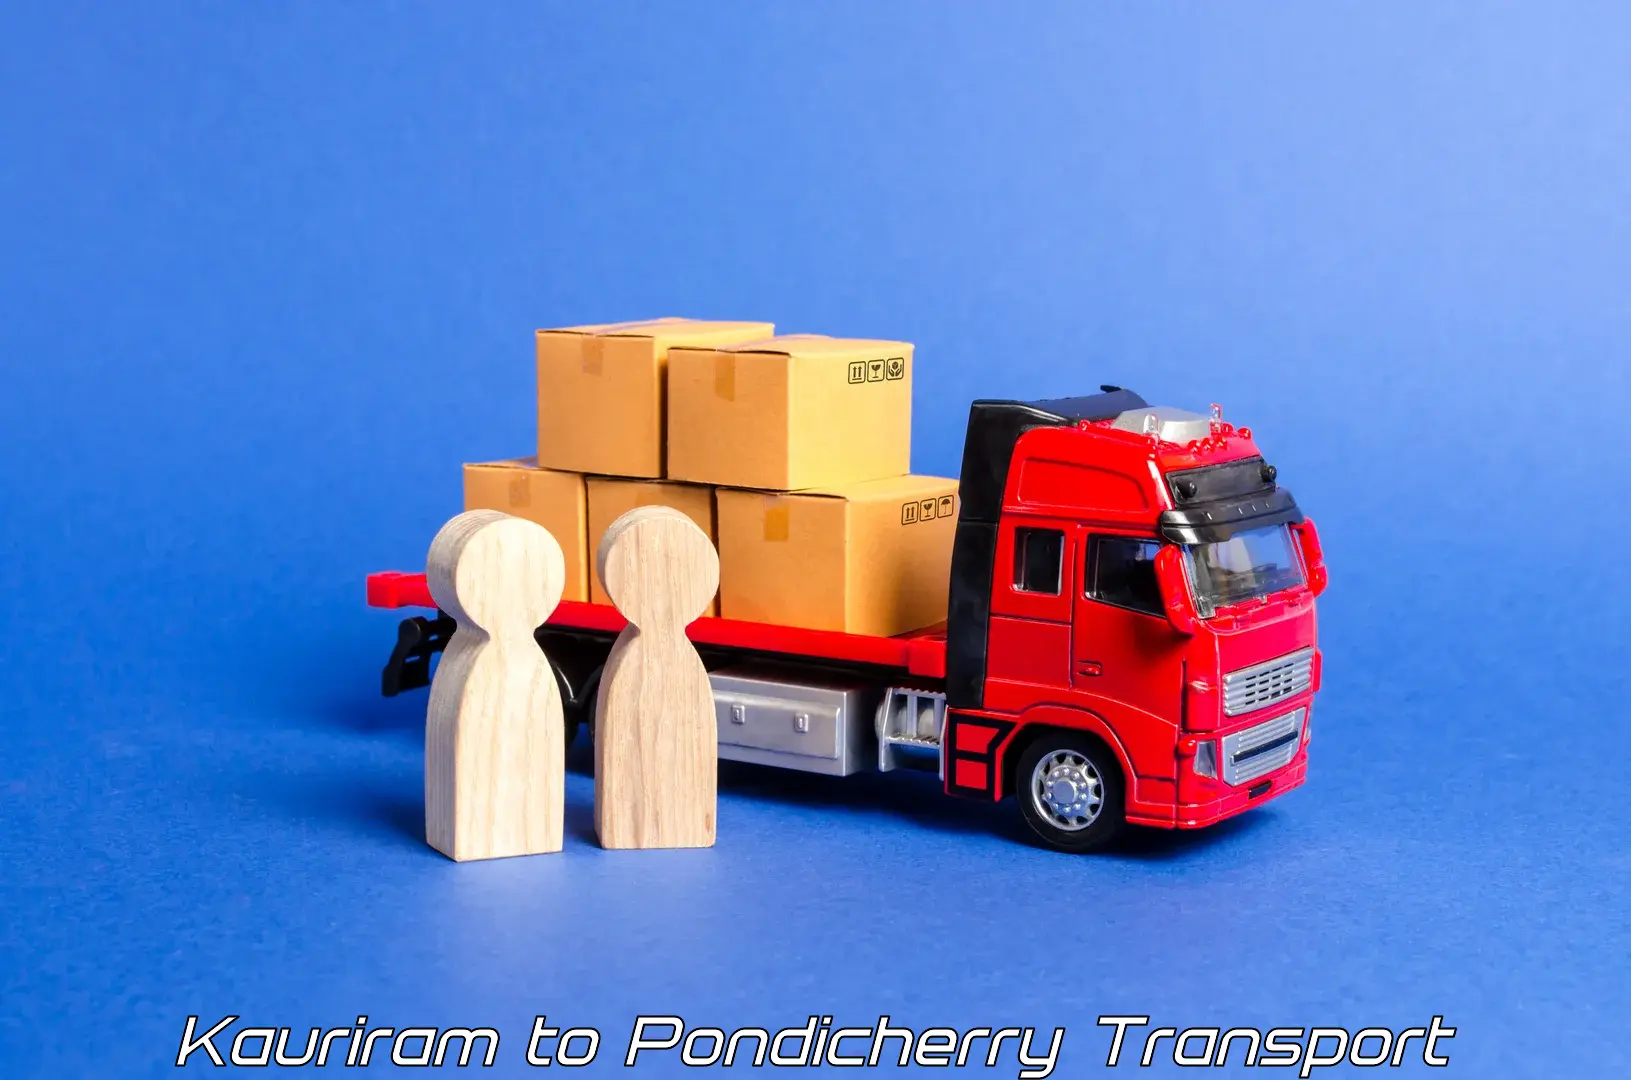 Truck transport companies in India Kauriram to Metttupalayam